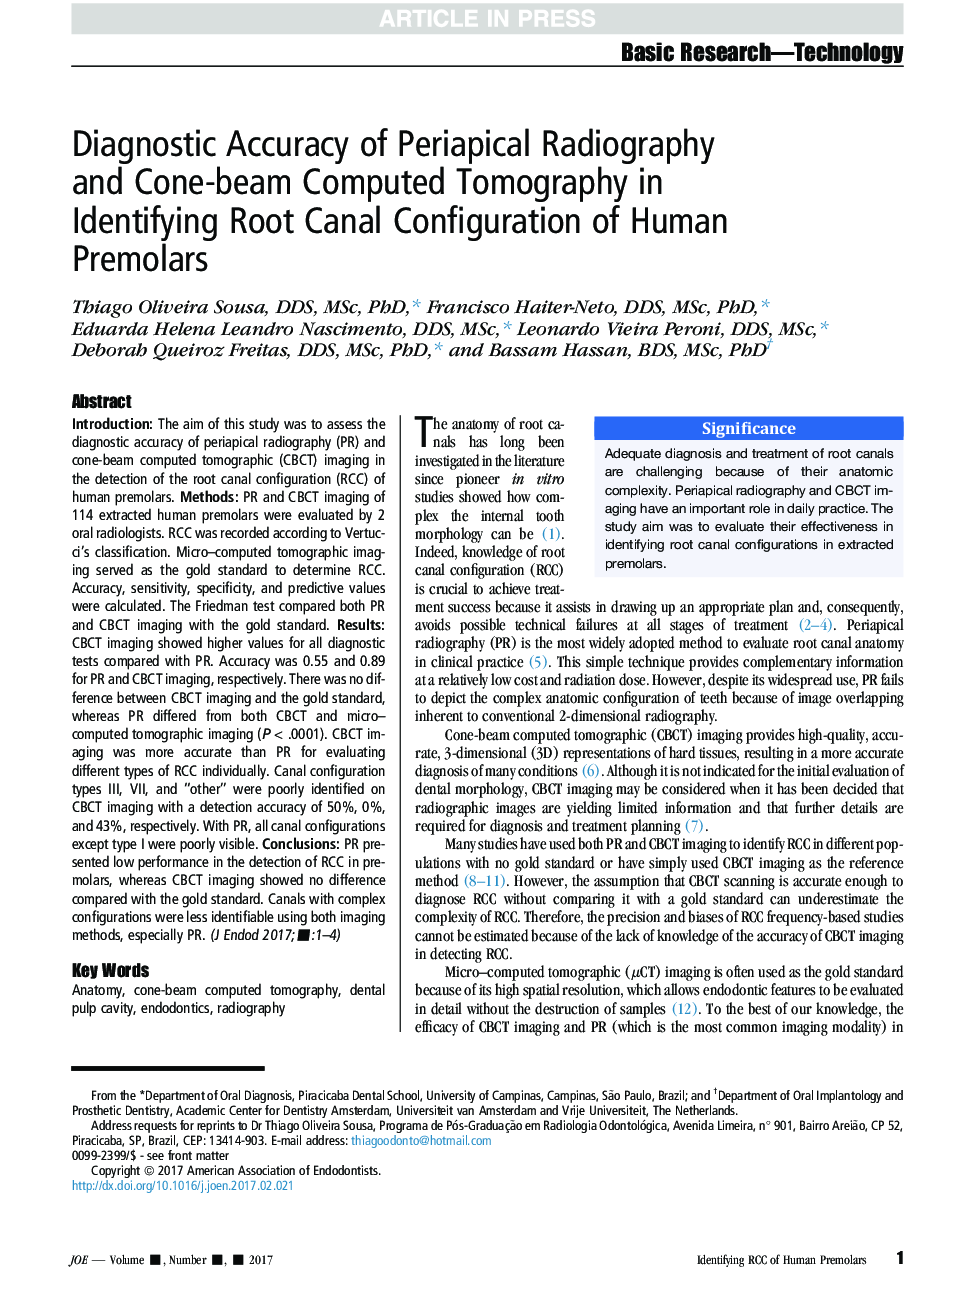 دقت تشخیصی رادیوگرافی پری اپیکال و توموگرافی کامپیوتری کانال پرتو در تشخیص کانال ریشه پرمولرهای انسانی 